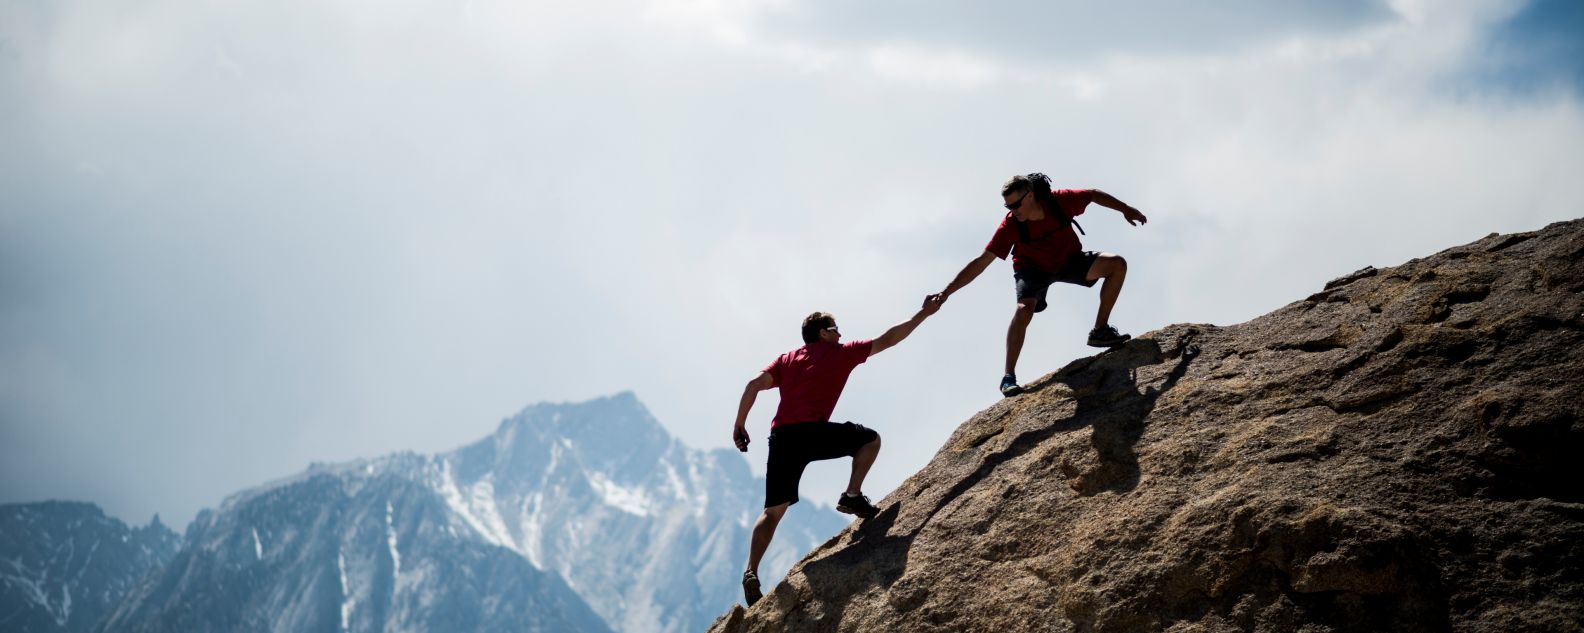 Ein Kletterer hilft einem anderen, den Gipfel eines riesigen Felsblocks zu erklimmen 